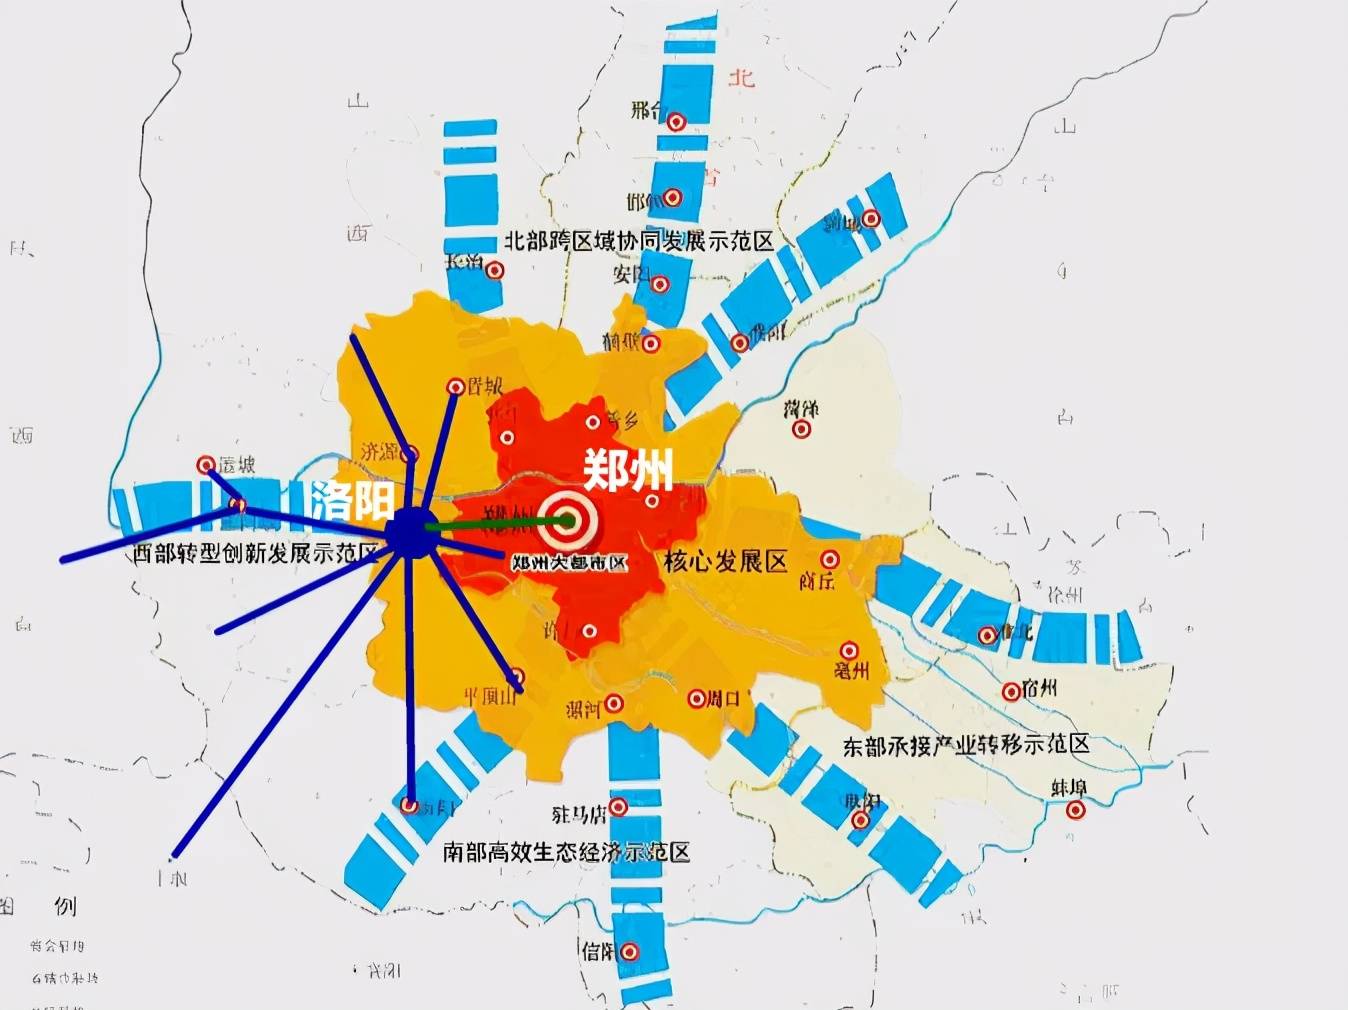 中原城市群核心规划范围河南省是人口大省,南阳,商丘是河南人口大市